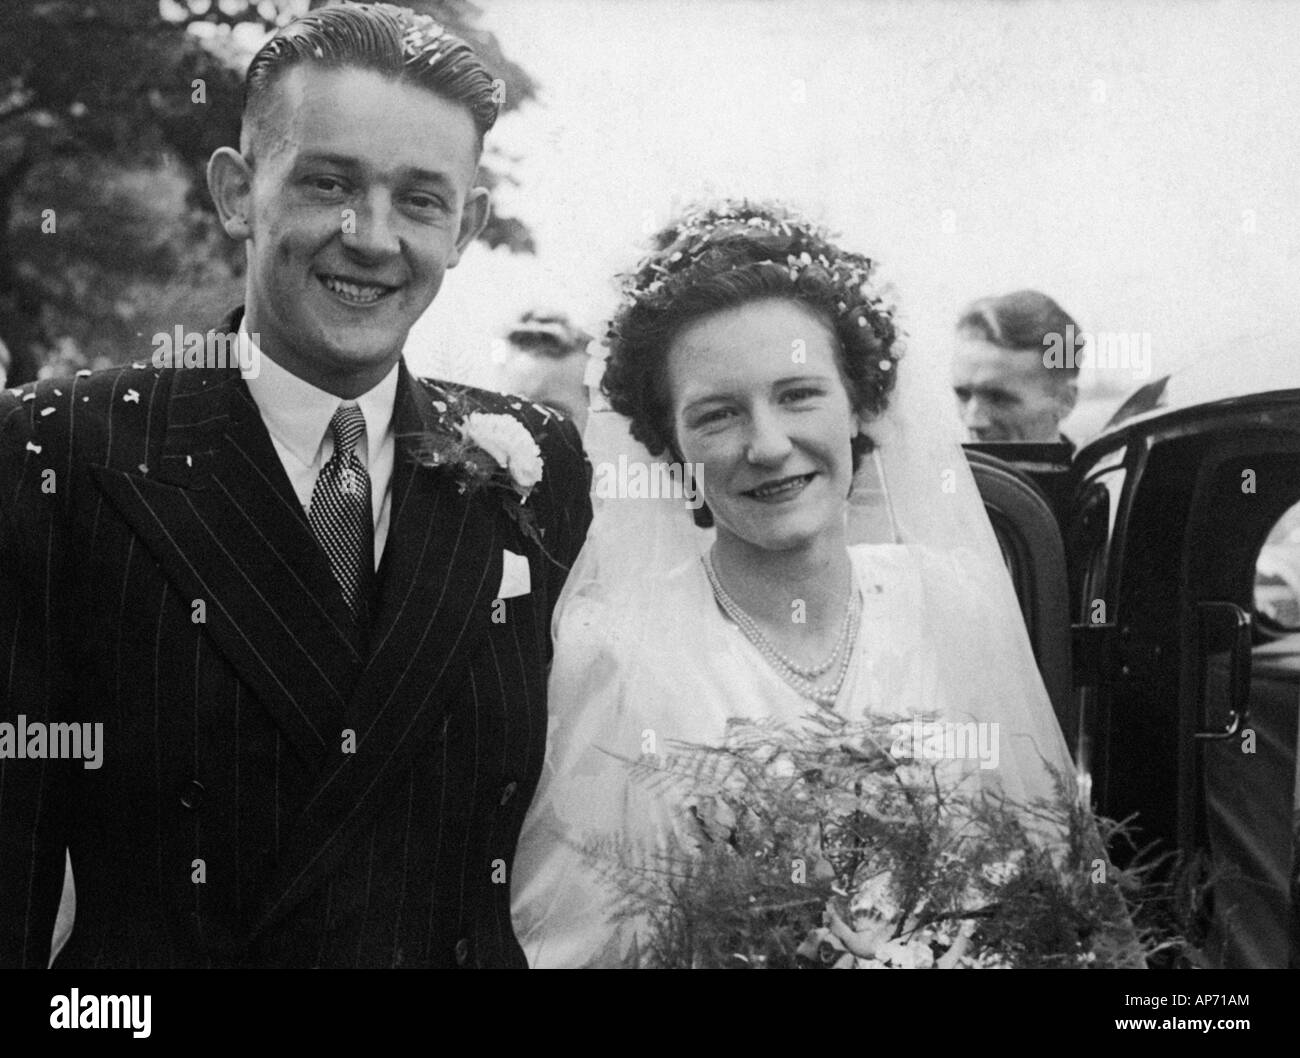 Alte Schwarz Weiss Familienfoto Snap Shot Von Braut Und Brautigam Am Ihrer Hochzeit Um 1950 Stockfotografie Alamy